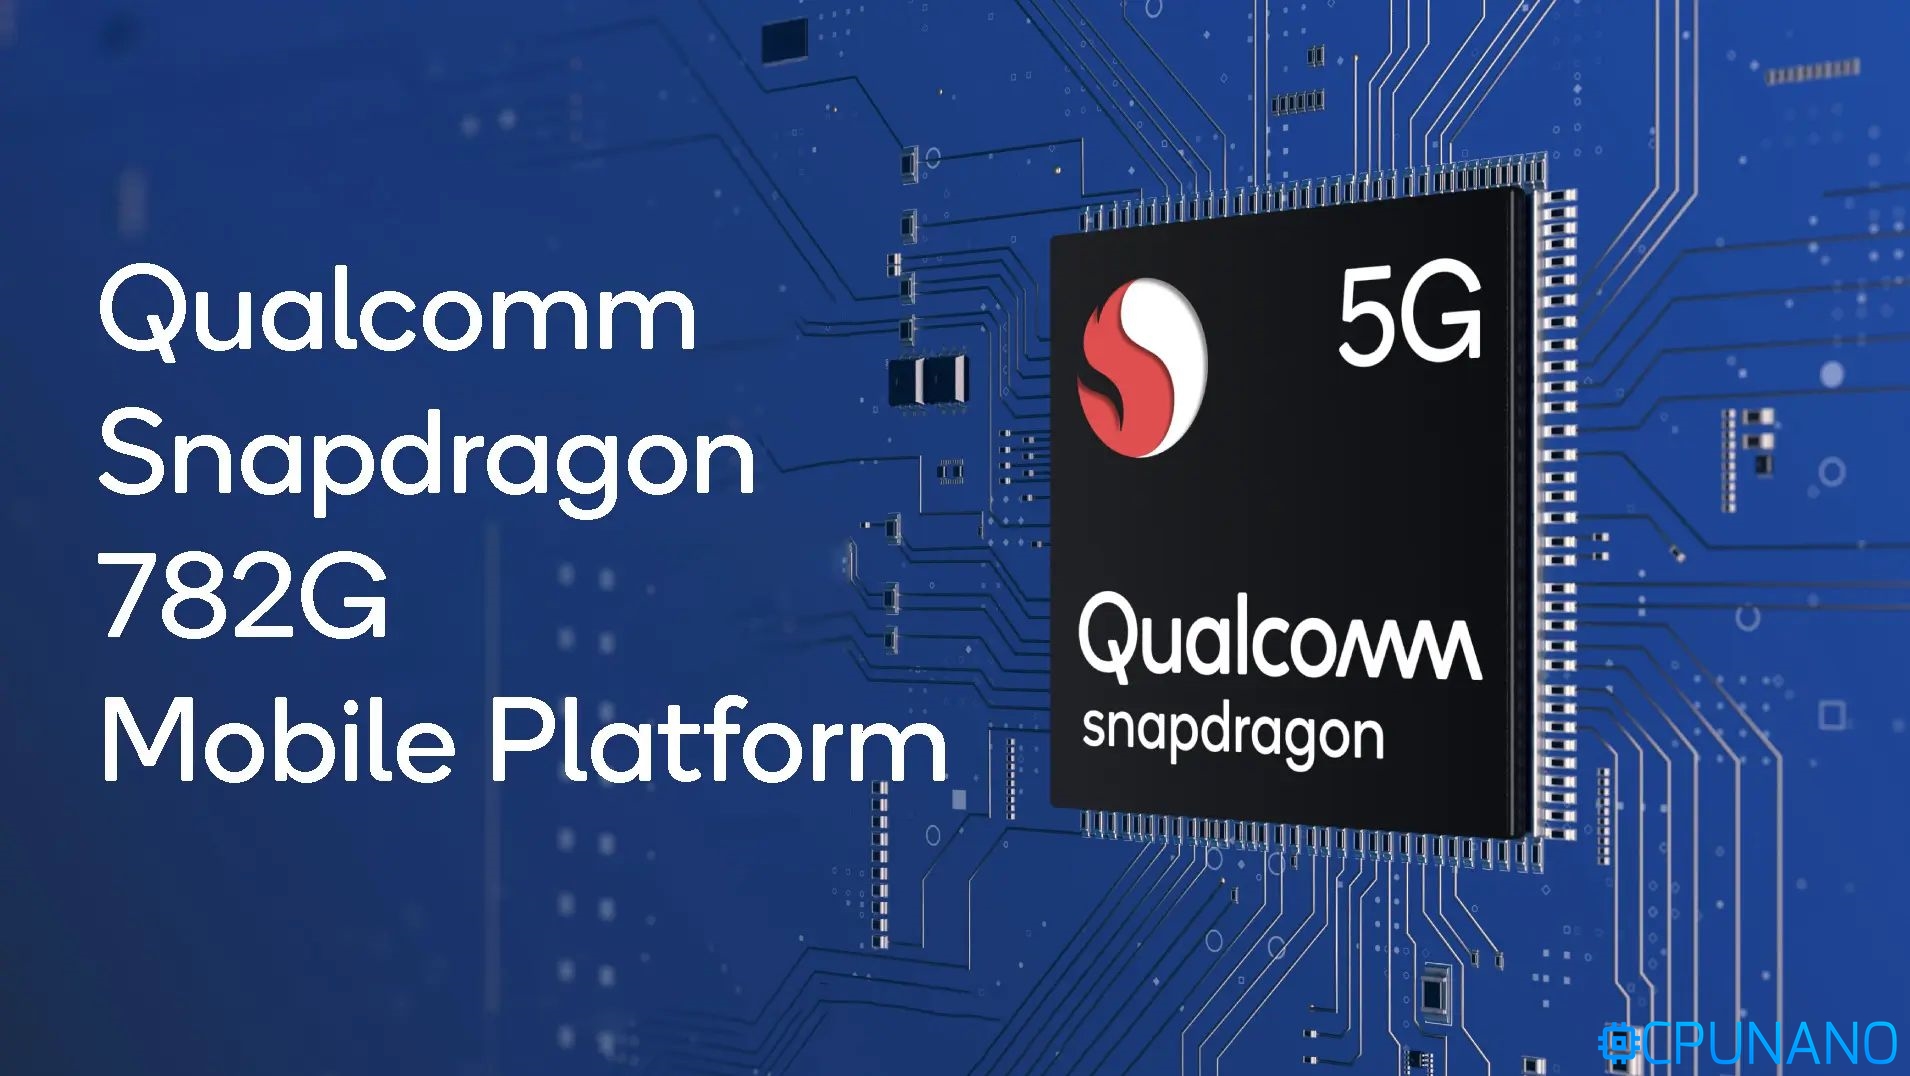 طرح معالج Snapdragon 782G بتحسينات طفيفة عن سابقه +SD778G